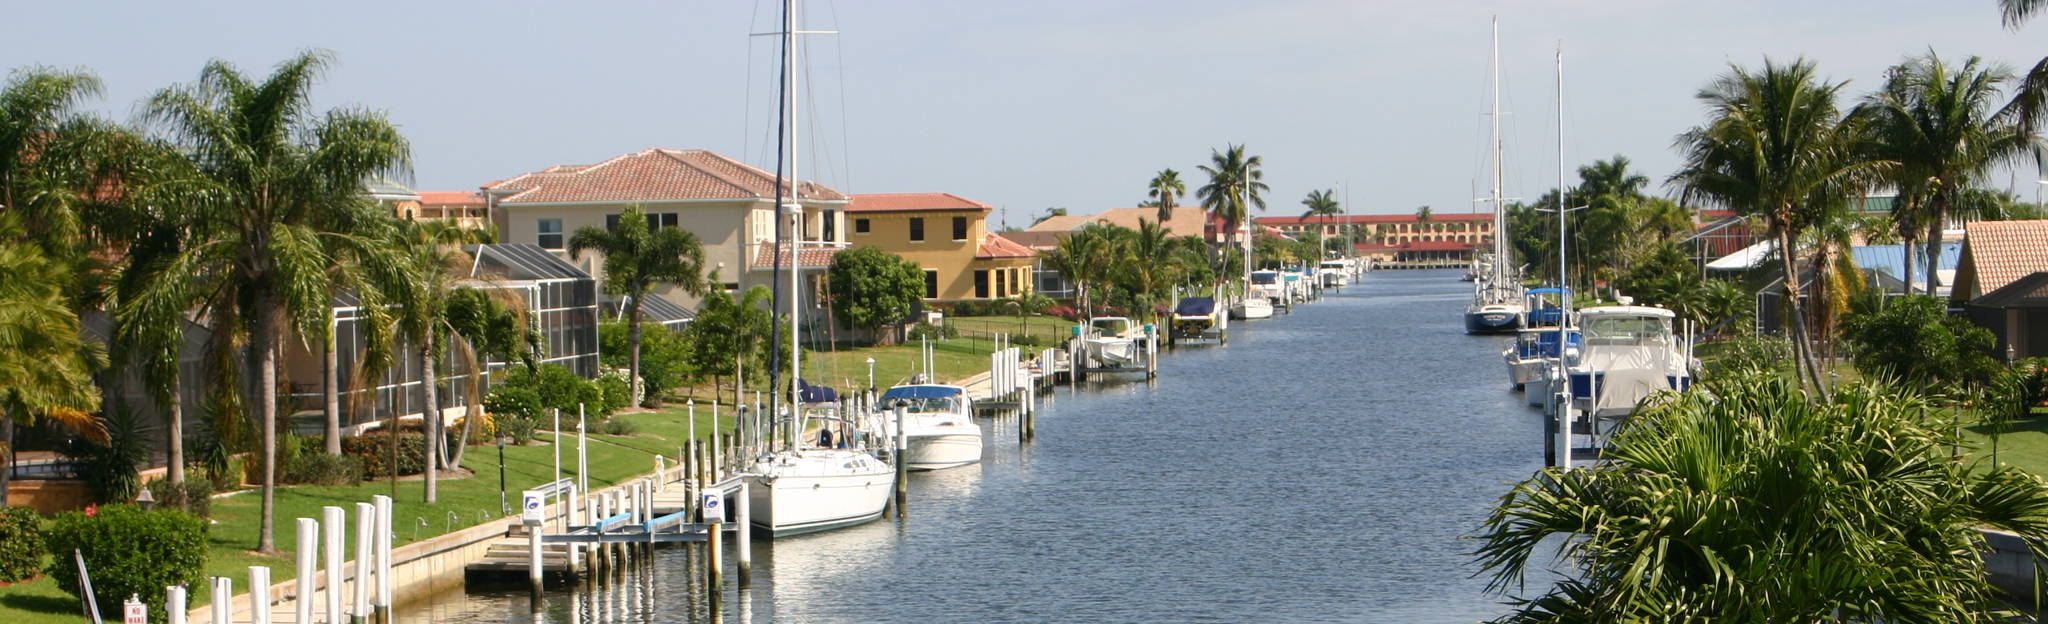 Punta Gorda Florida Homes for Sale